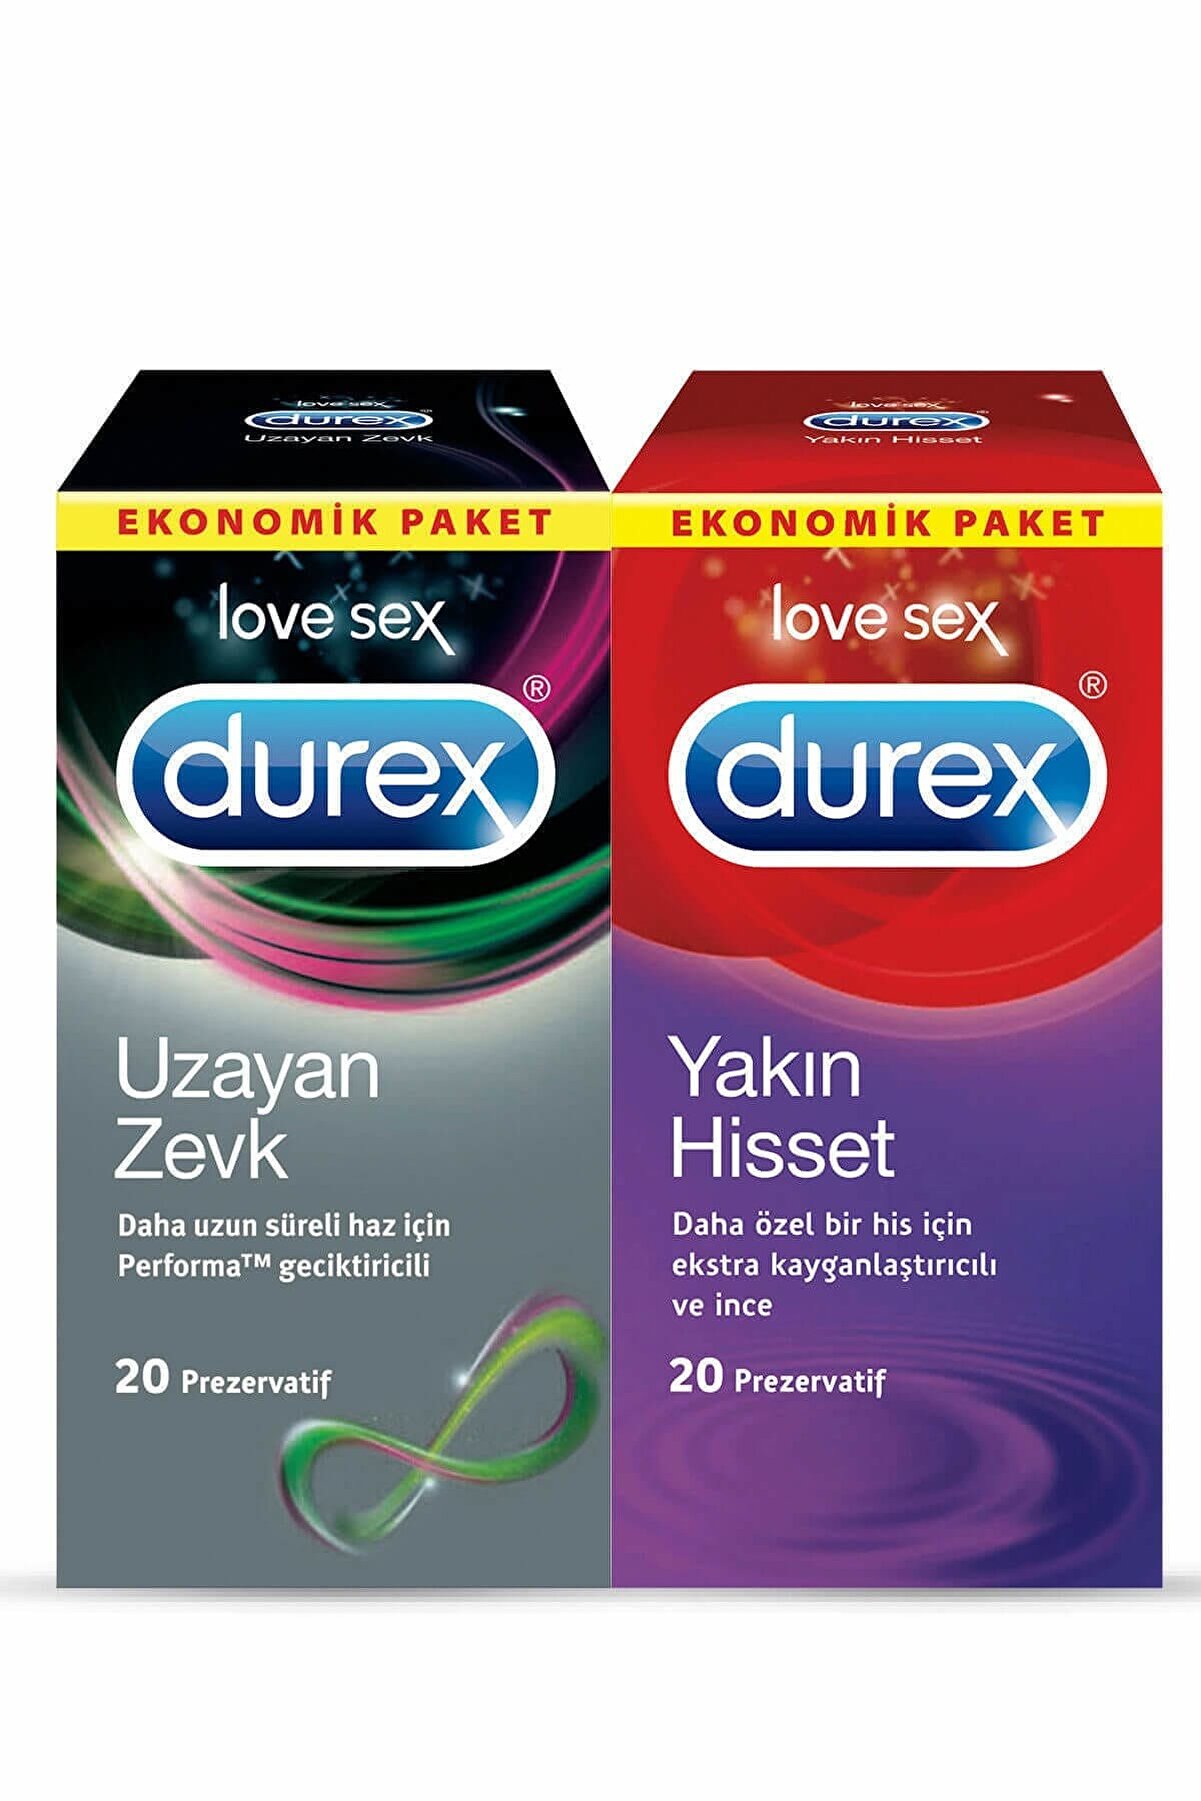 Durex Uzayan Zevk + Yakın Hisset Prezervatif 40'Lı Ekonomik Paket